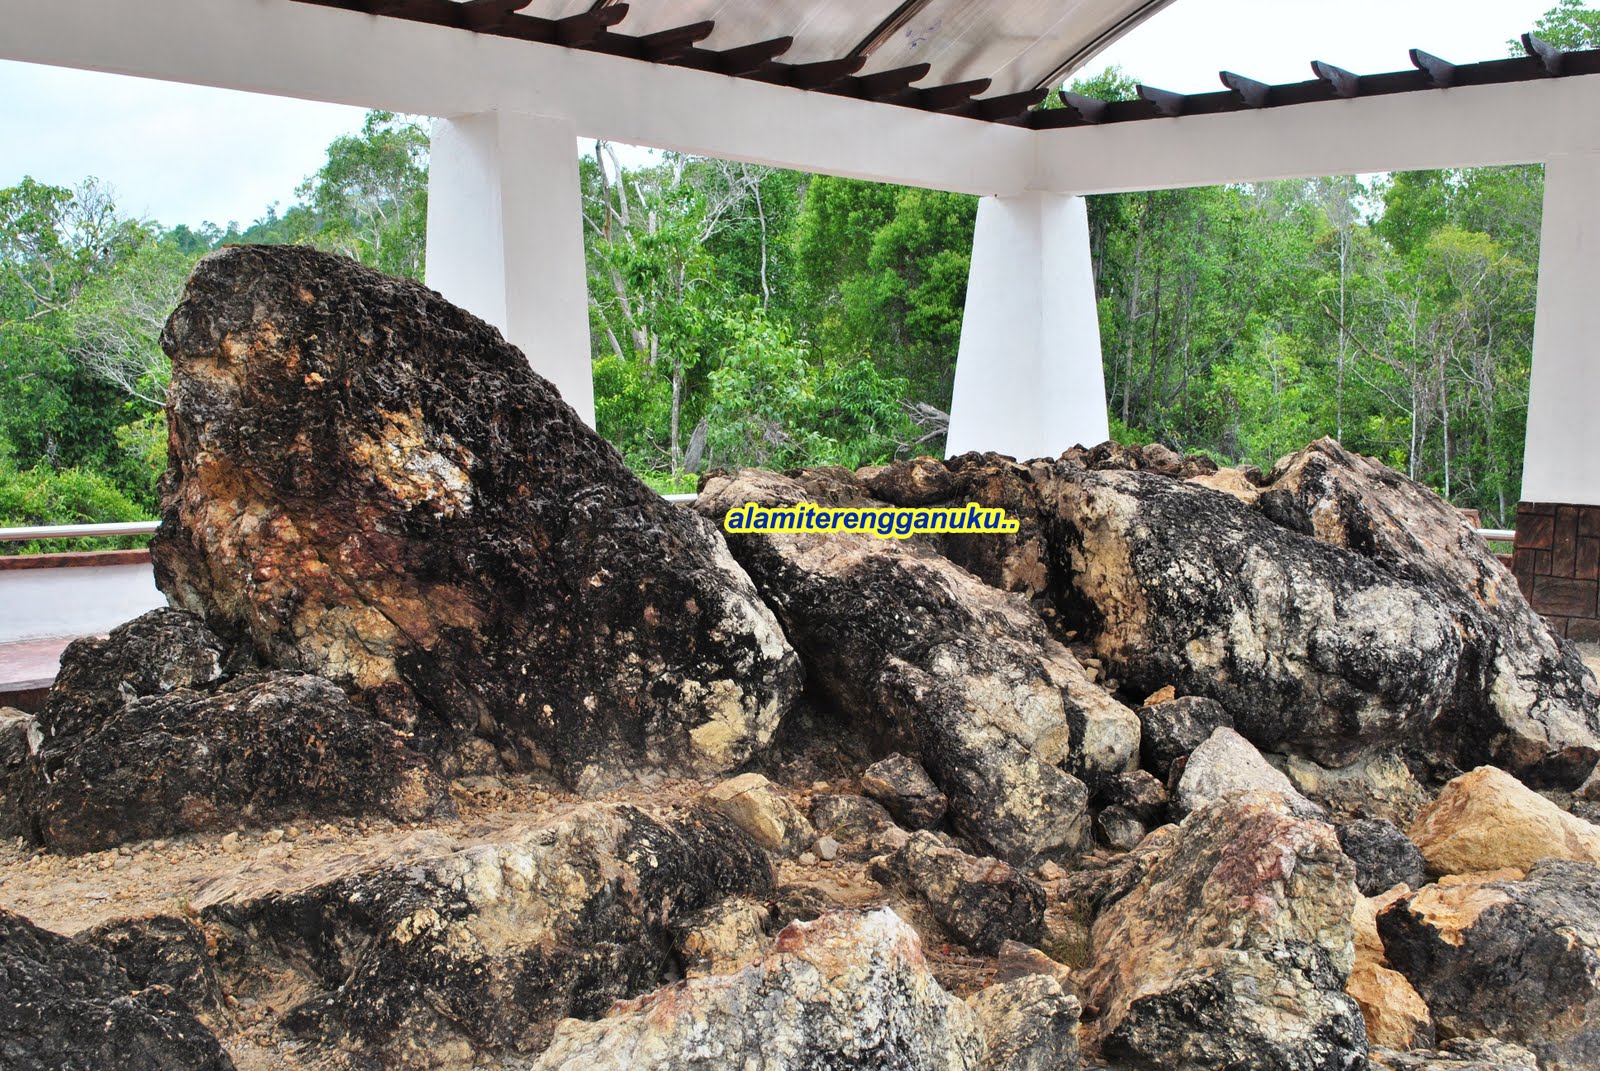 Alami Terengganu: Batu Penyu, Bukit Che Hawa, Rantau Abang.